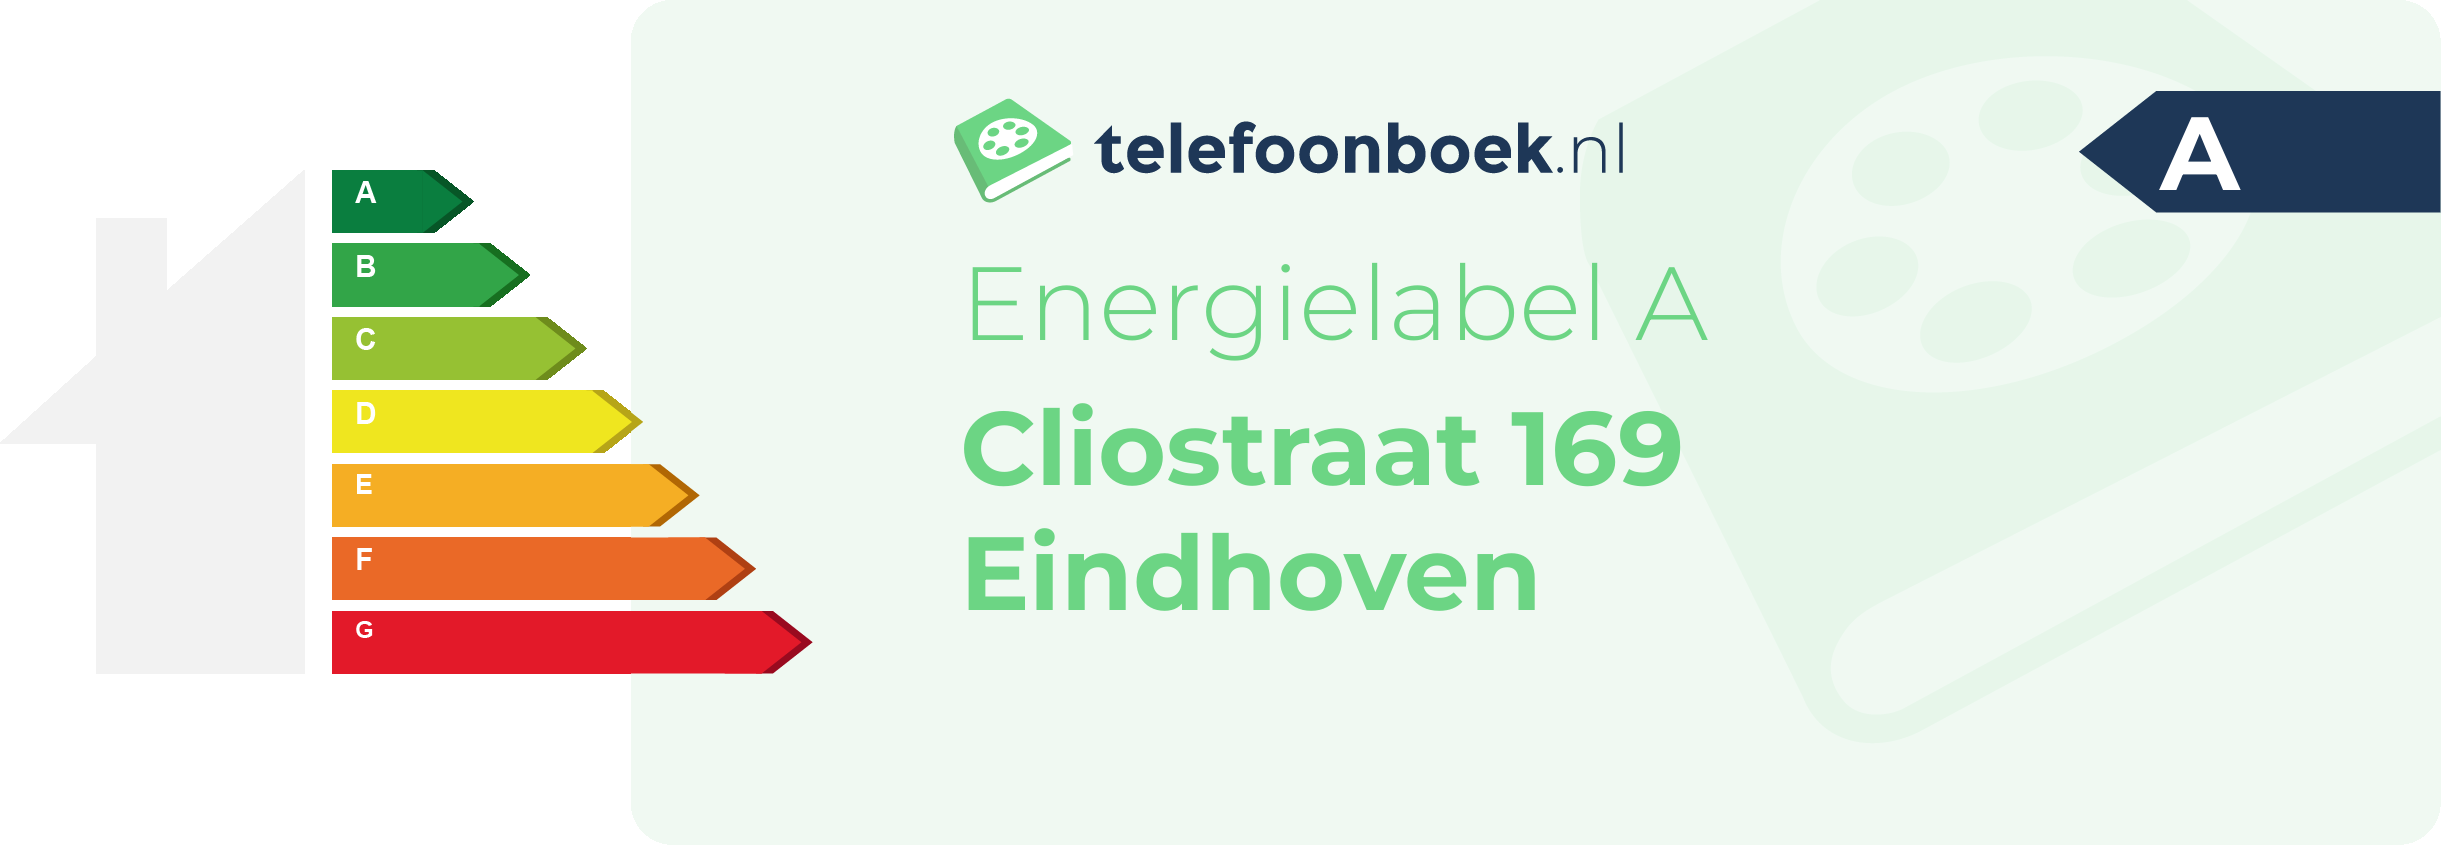 Energielabel Cliostraat 169 Eindhoven